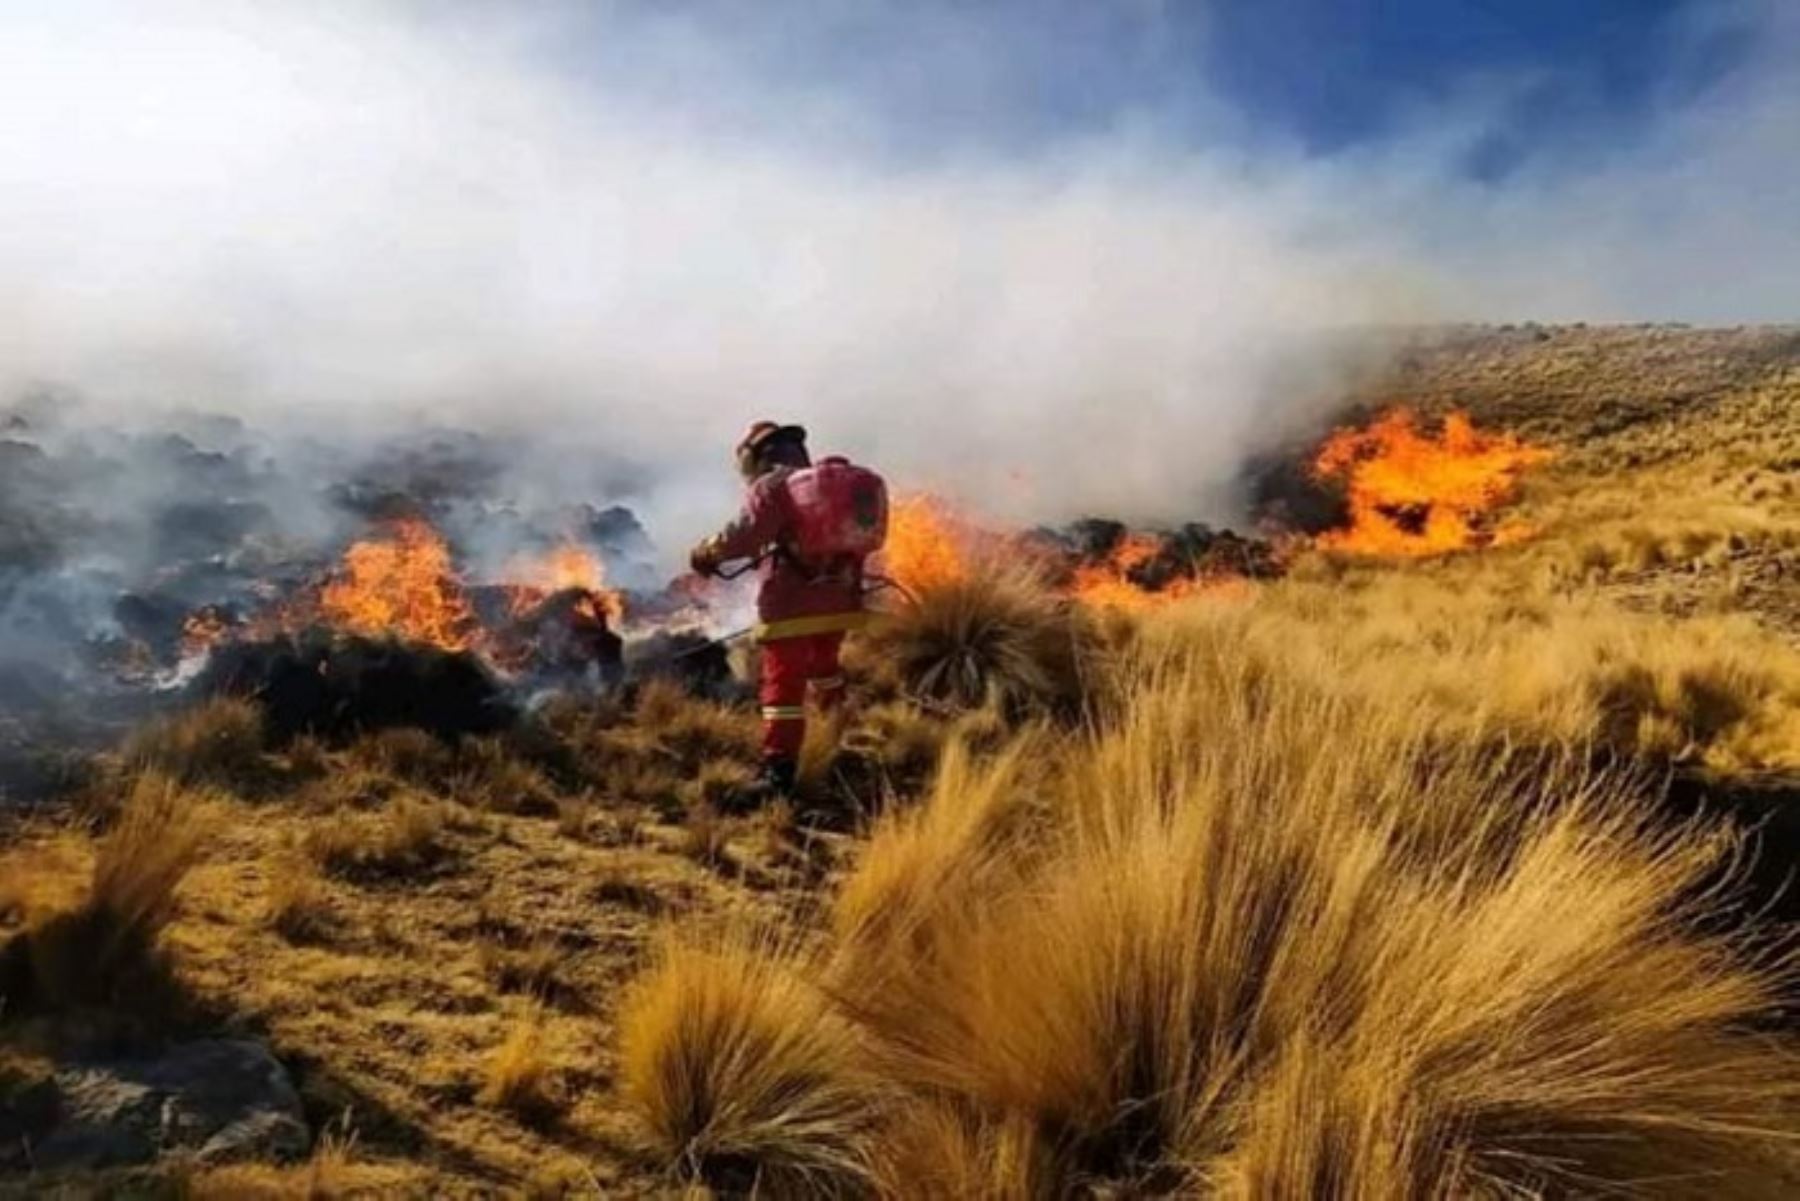 El incendio forestal se desató el 20 de agosto en el distrito de Ihuayllo, provincia de Aymaraes, región Apurímac. Foto: Cortesía